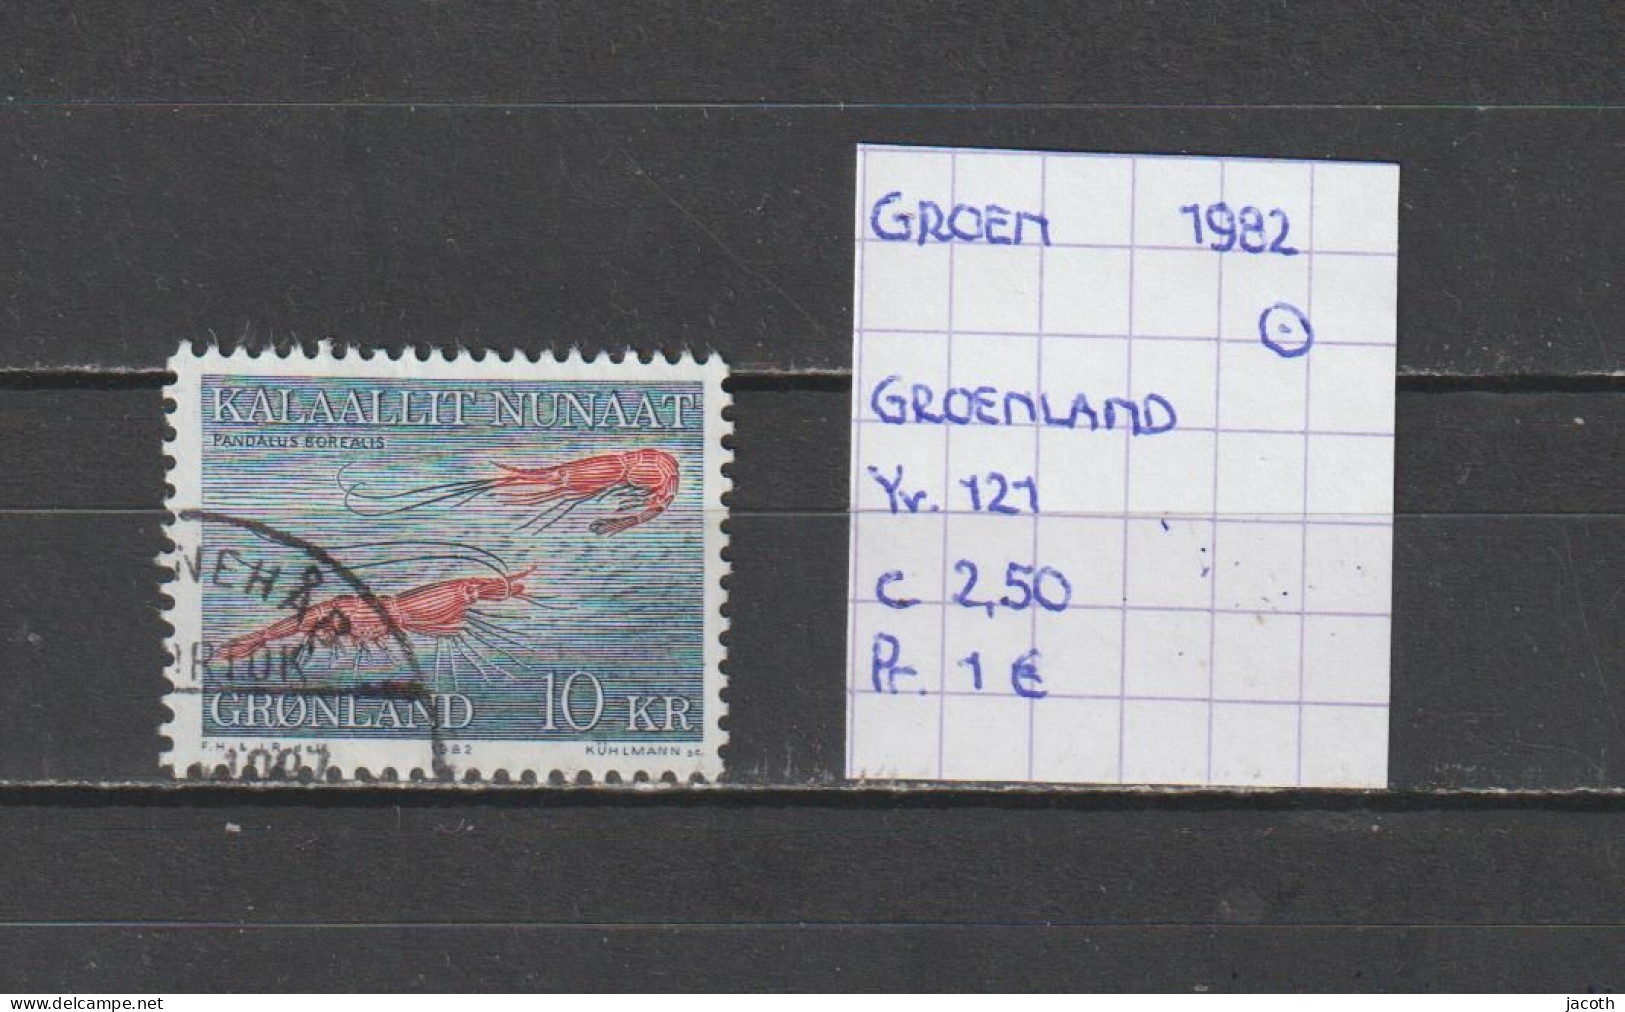 (TJ) Groenland 1982 - YT 121 (gest./obl./used) - Gebraucht